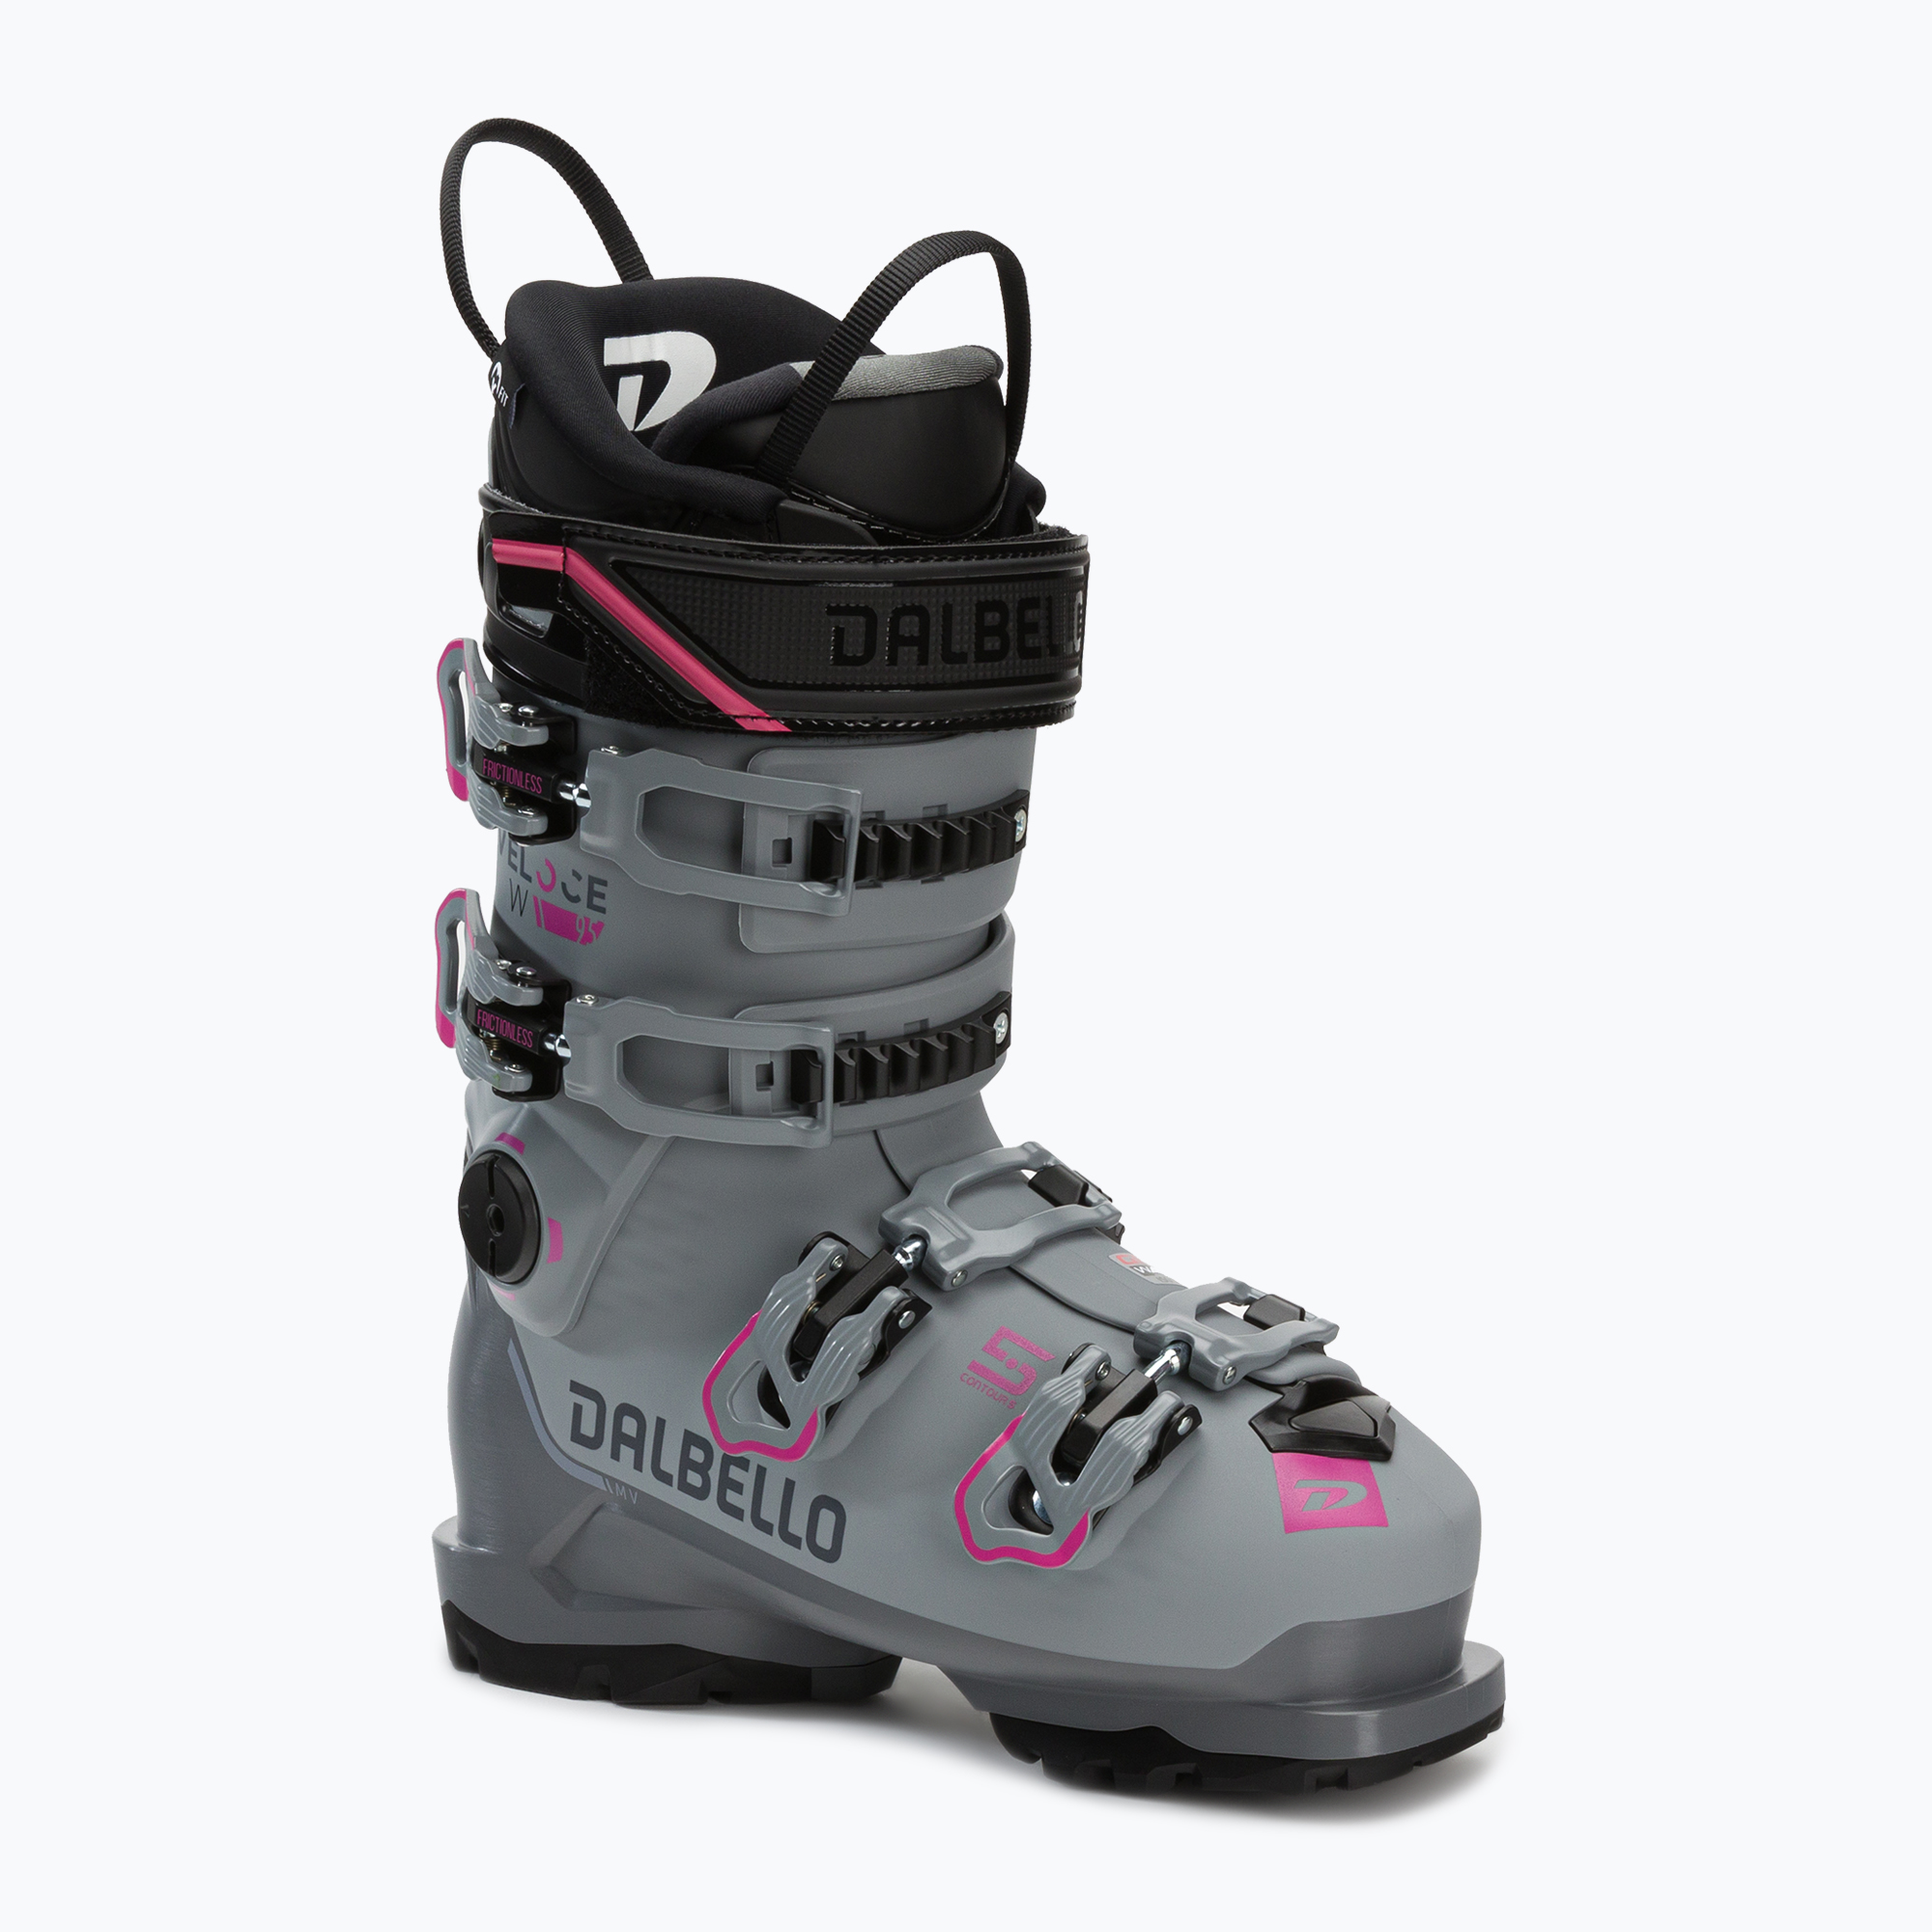 Încălțăminte de schi pentru femei Dalbello Veloce 95 W GW gri-roză Dalbello Veloce 95 W GW D2203010.10